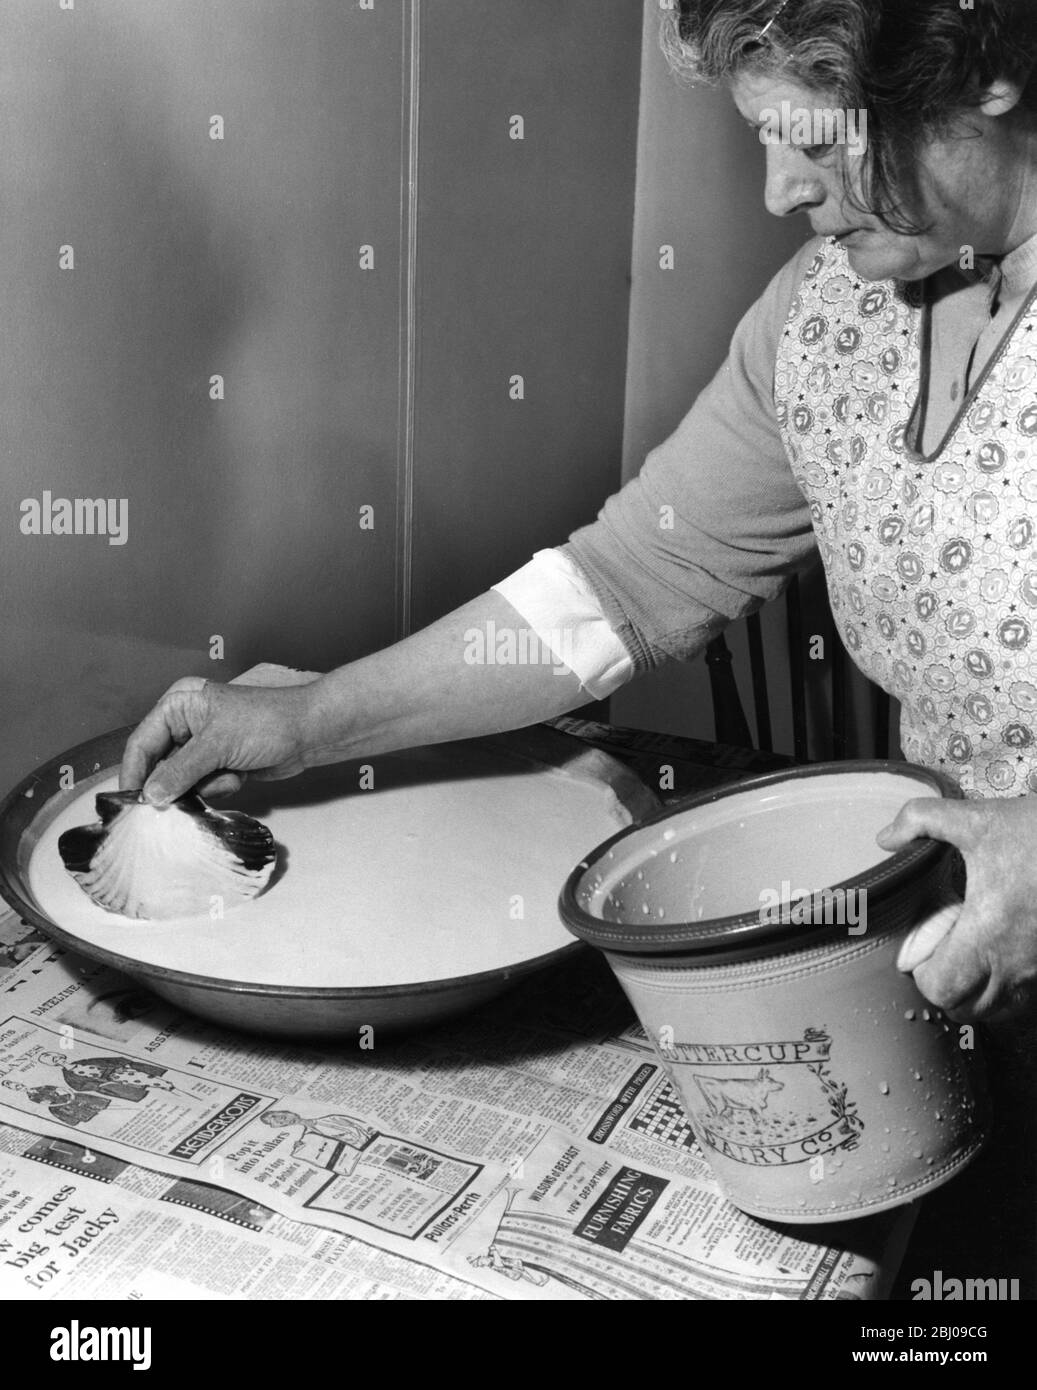 Miss Peggy Macleod Butter machen - Abziehen der Creme aus thee Cremepfannen Beachten Sie, dass sie Skollop Sheel in Daliburgh South Uist Äußere Hebridgen Schottland verwendet - September 1961 Stockfoto